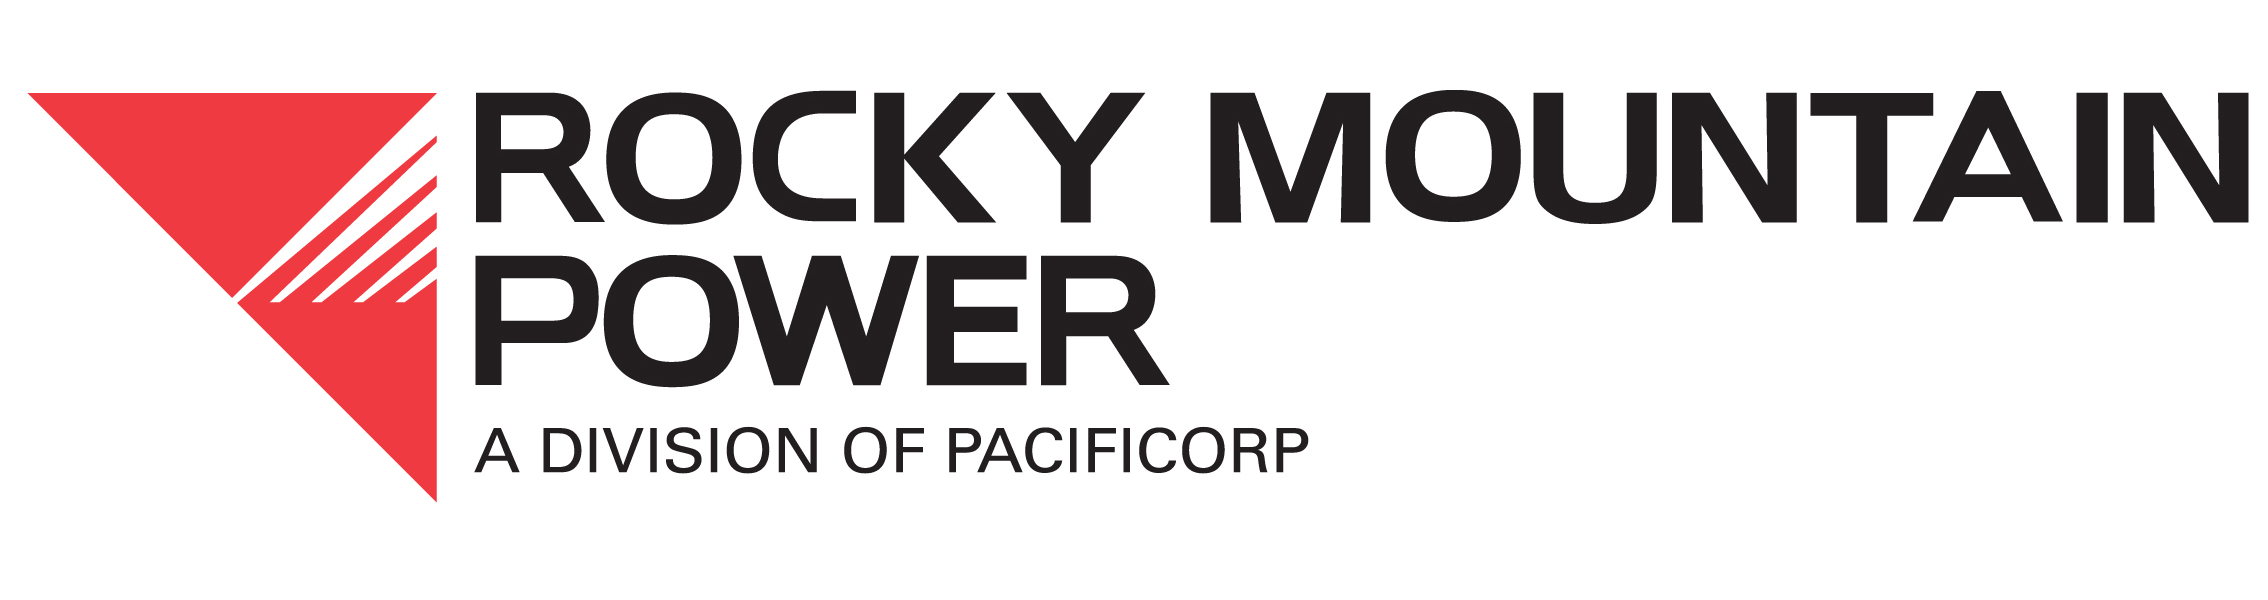 rocky-mountain-power-dopcageo